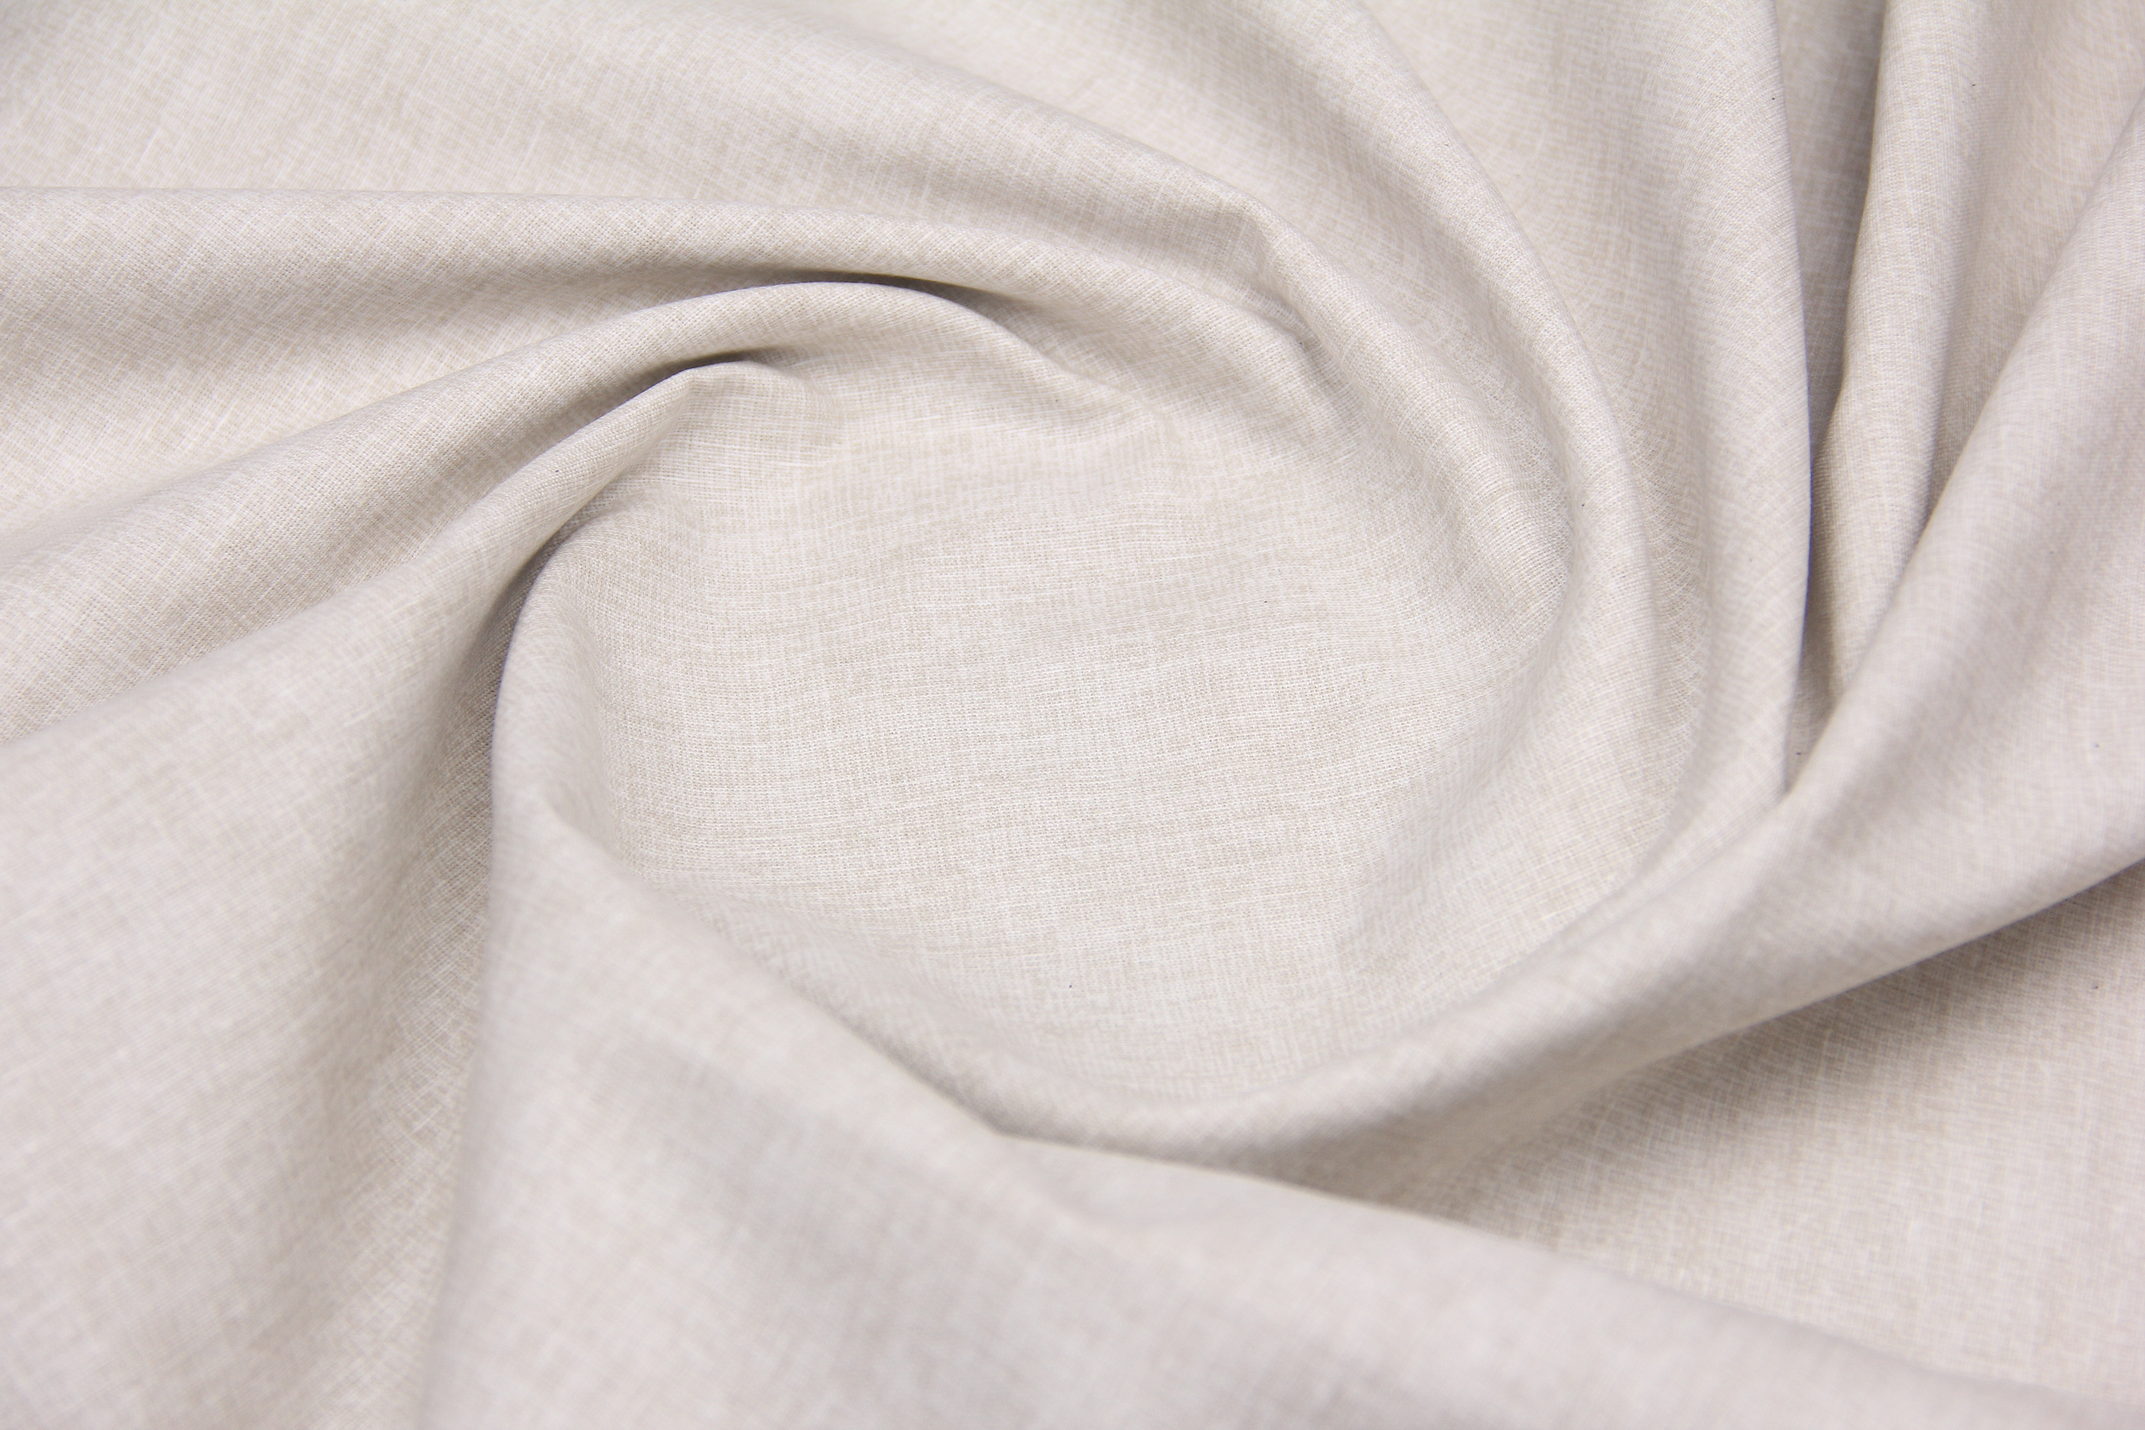 Ткань Ранфорс Текстура Холодный беж, Турция, ширина 240 см, 70% хлопок 30% ПЭ